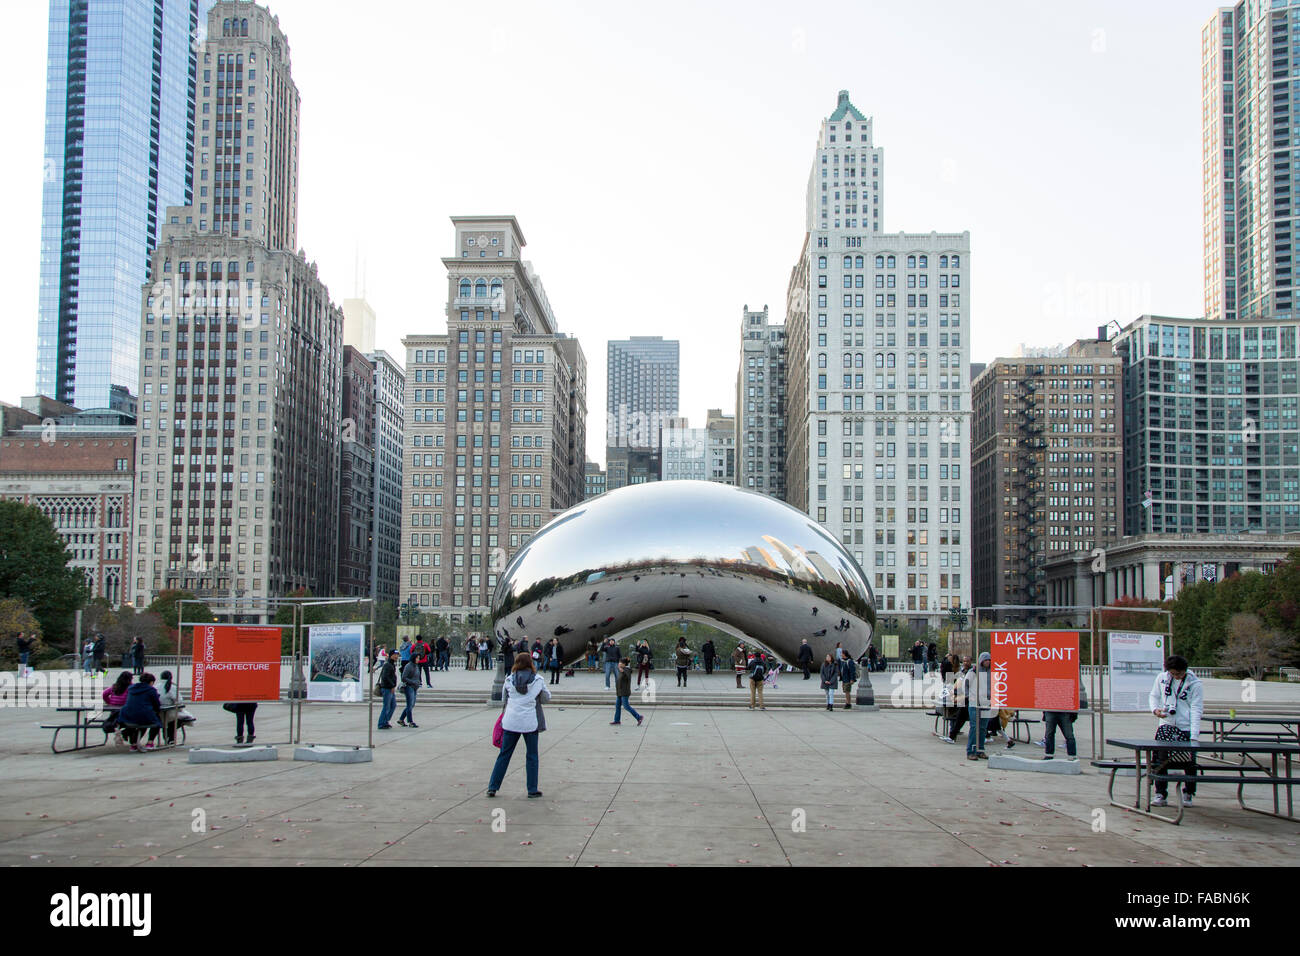 horizonte y los visitantes se reflejaron en la escultura de acero de Cloud Gate de Anish conocida 'el frijol' el Millennium Park, Chicago, Illinois, EE.UU Fotografía de stock -